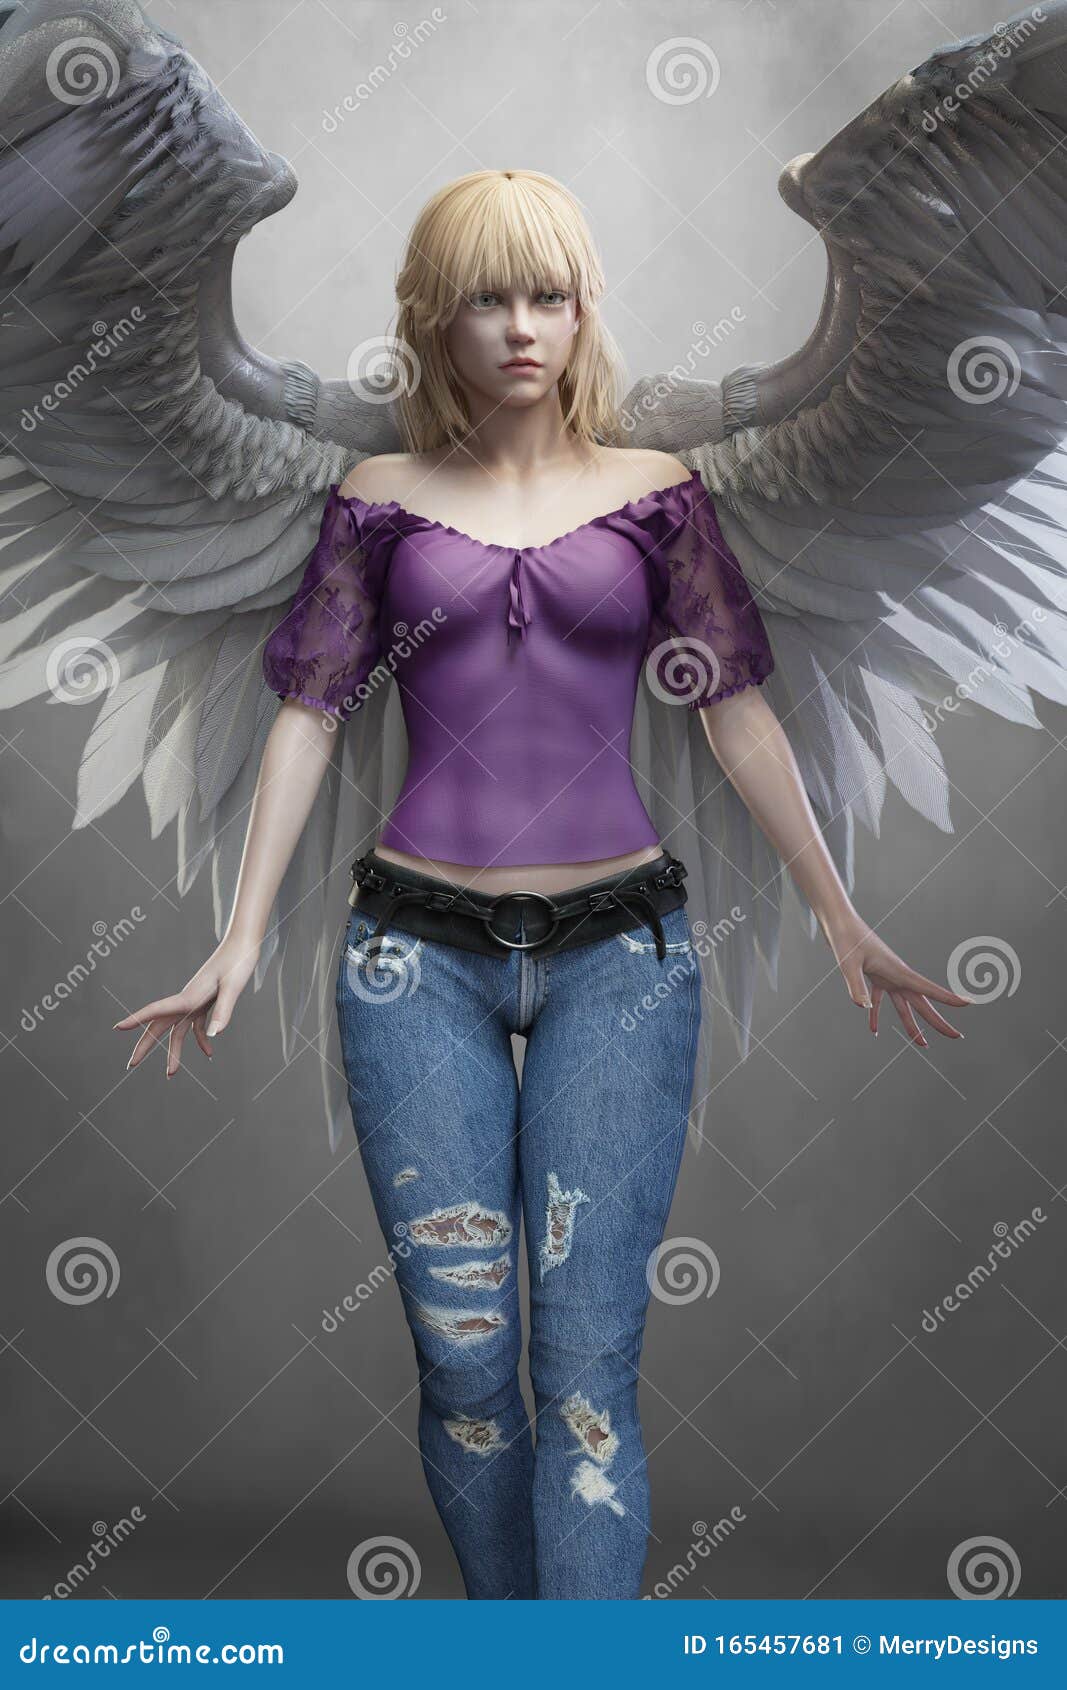 Psicológico fascismo Ojalá Representación De Una Bella Joven Angel Blanca Vestida Con Ropa Moderna  Stock de ilustración - Ilustración de inocente, calma: 165457681